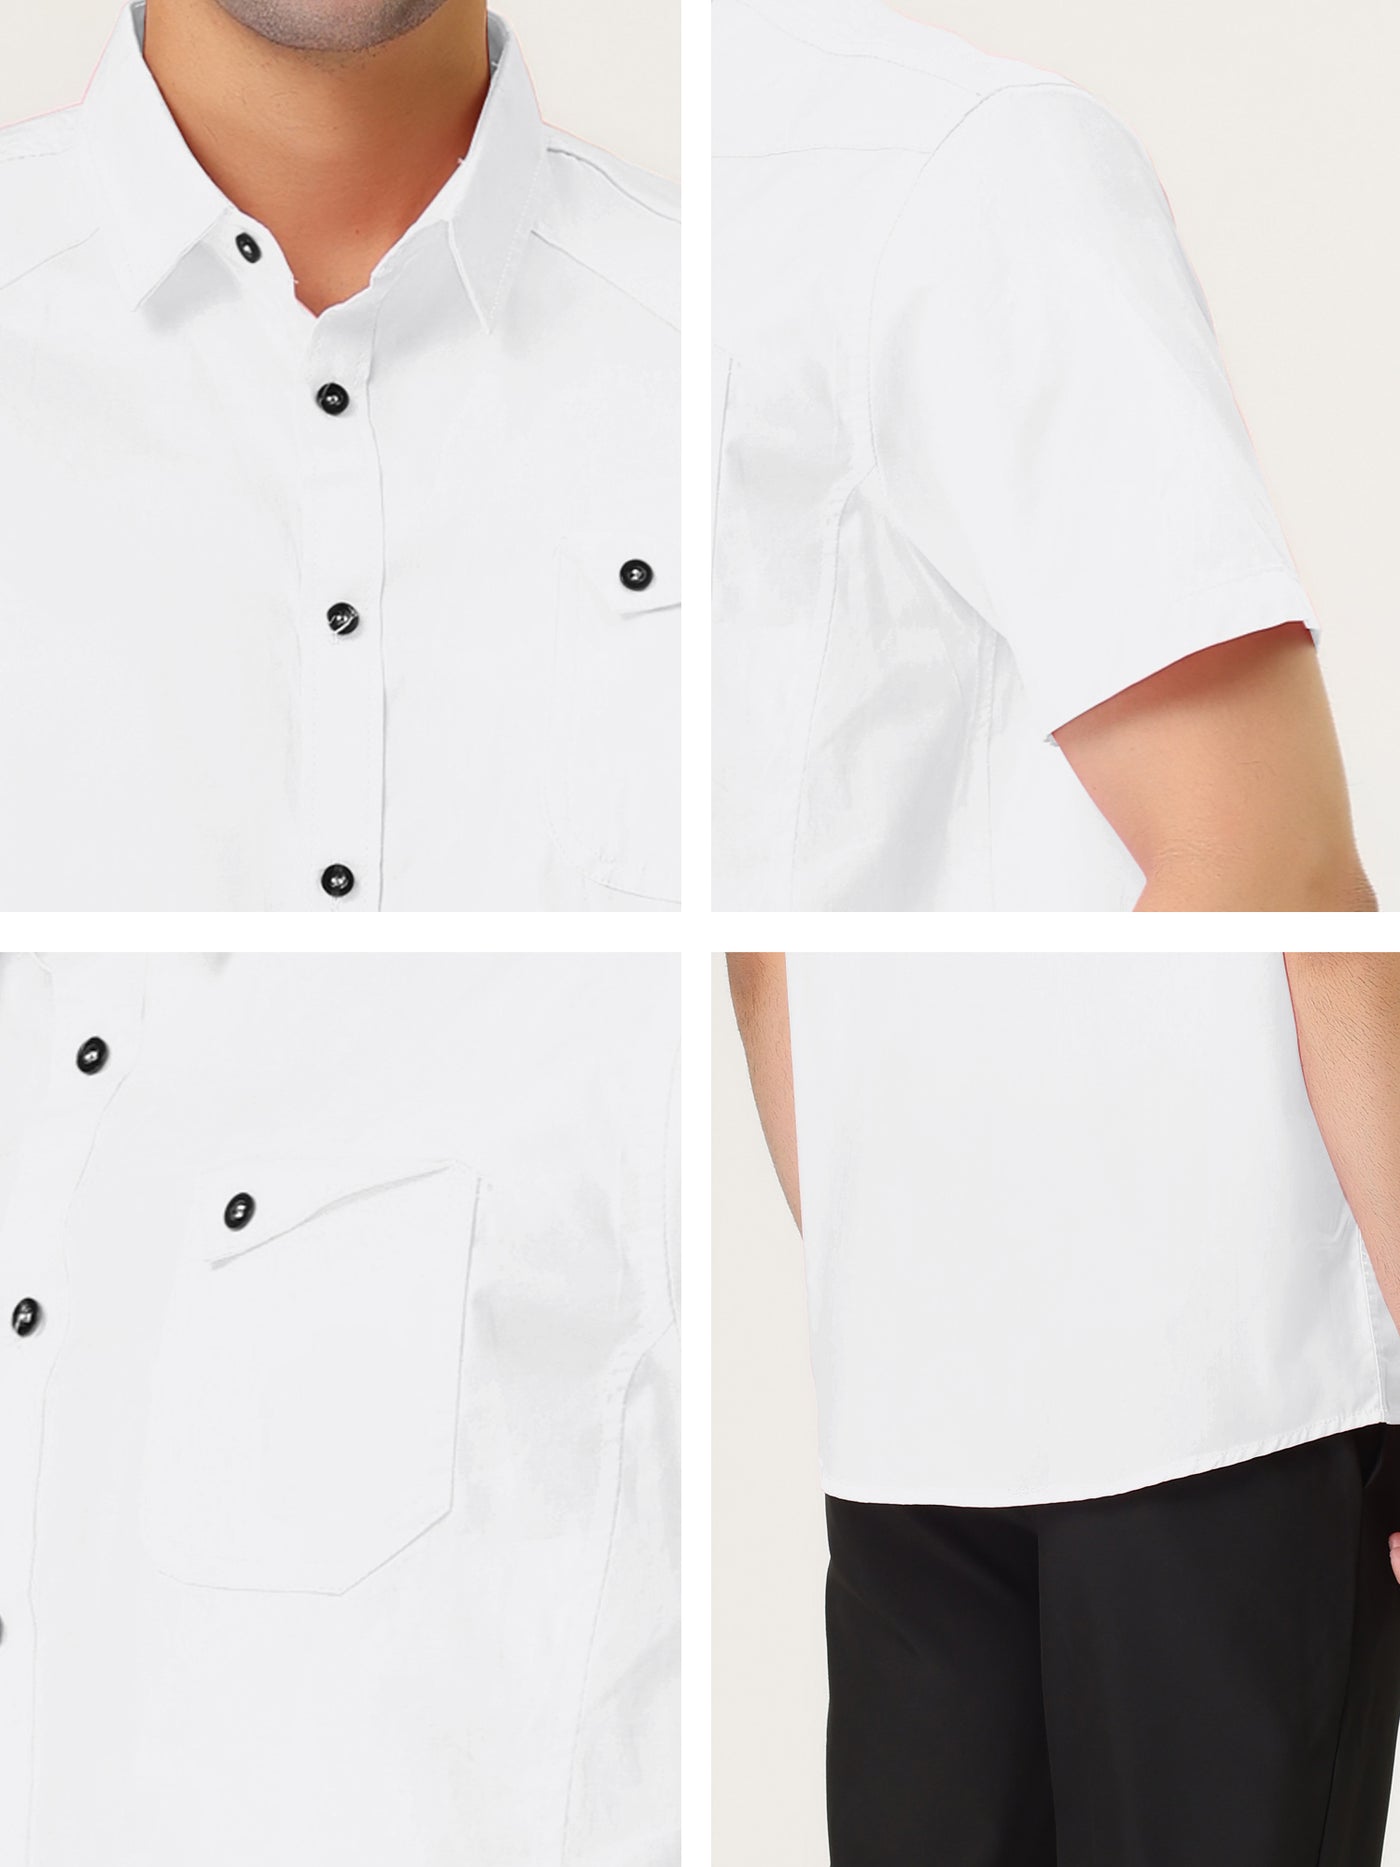 Bublédon Short Sleeve Button Down Smart Casual Work Shirt